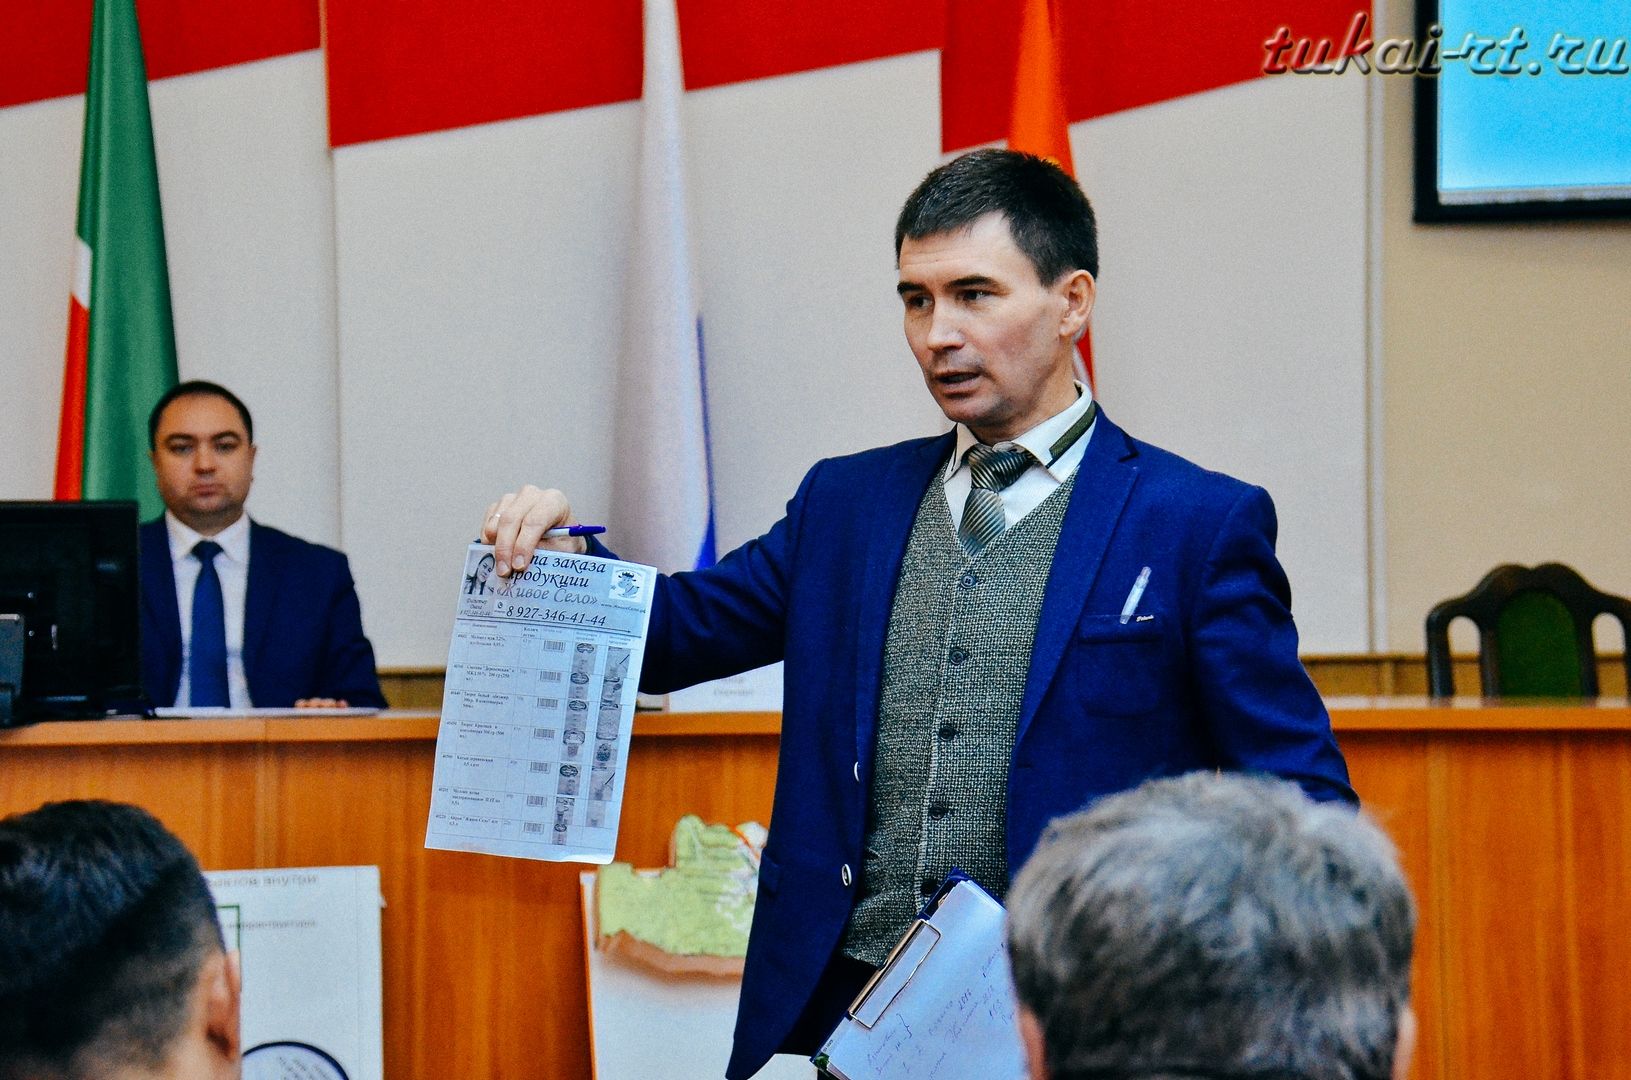 В администрации Тукаевского района прошла открытая дискуссия по развитию сельского предпринимательства ФОТО